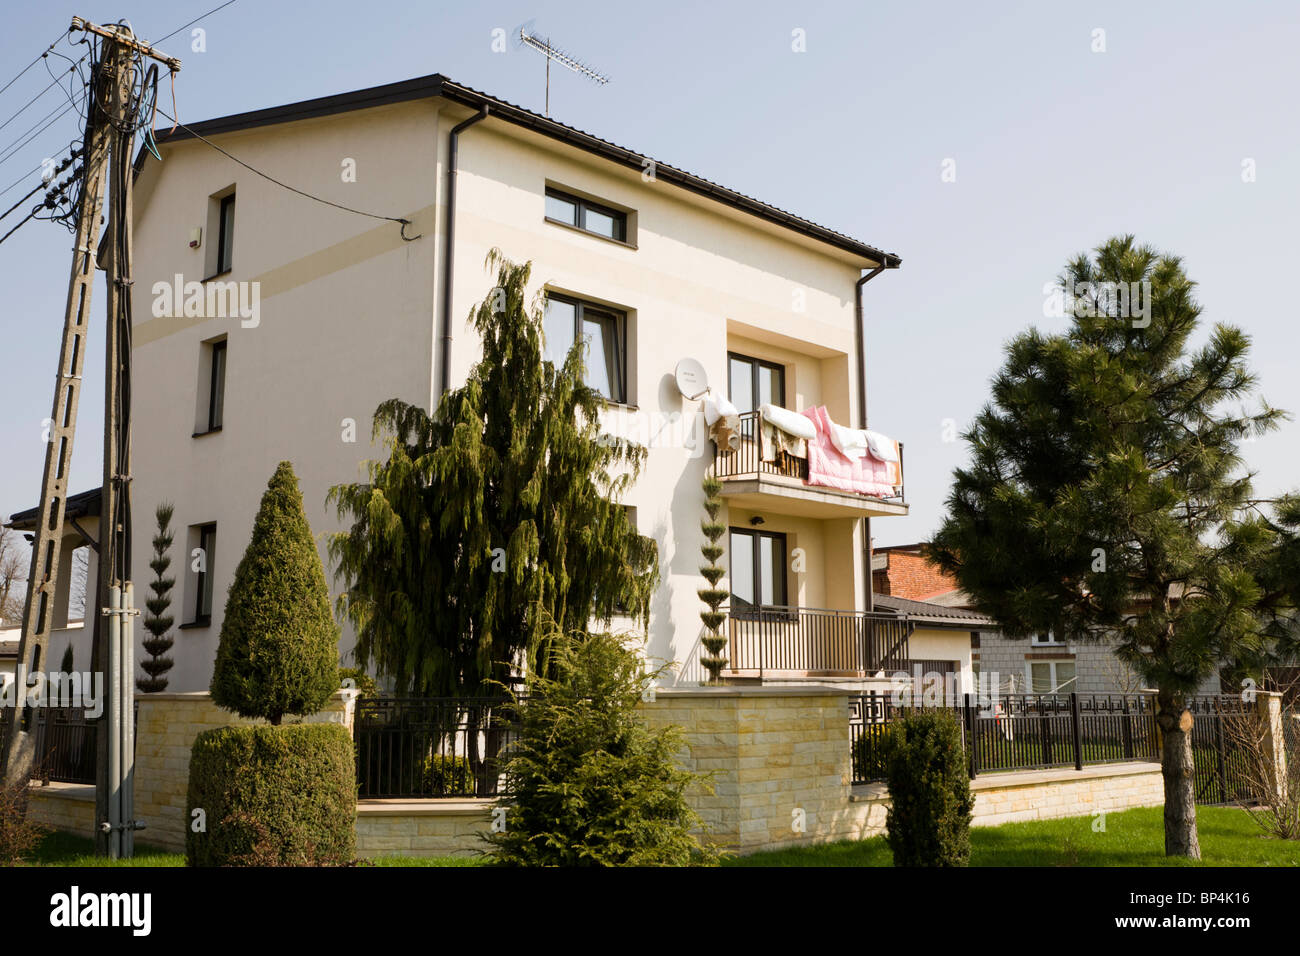 Casa Residencial, Zwolen Polonia. Foto de stock